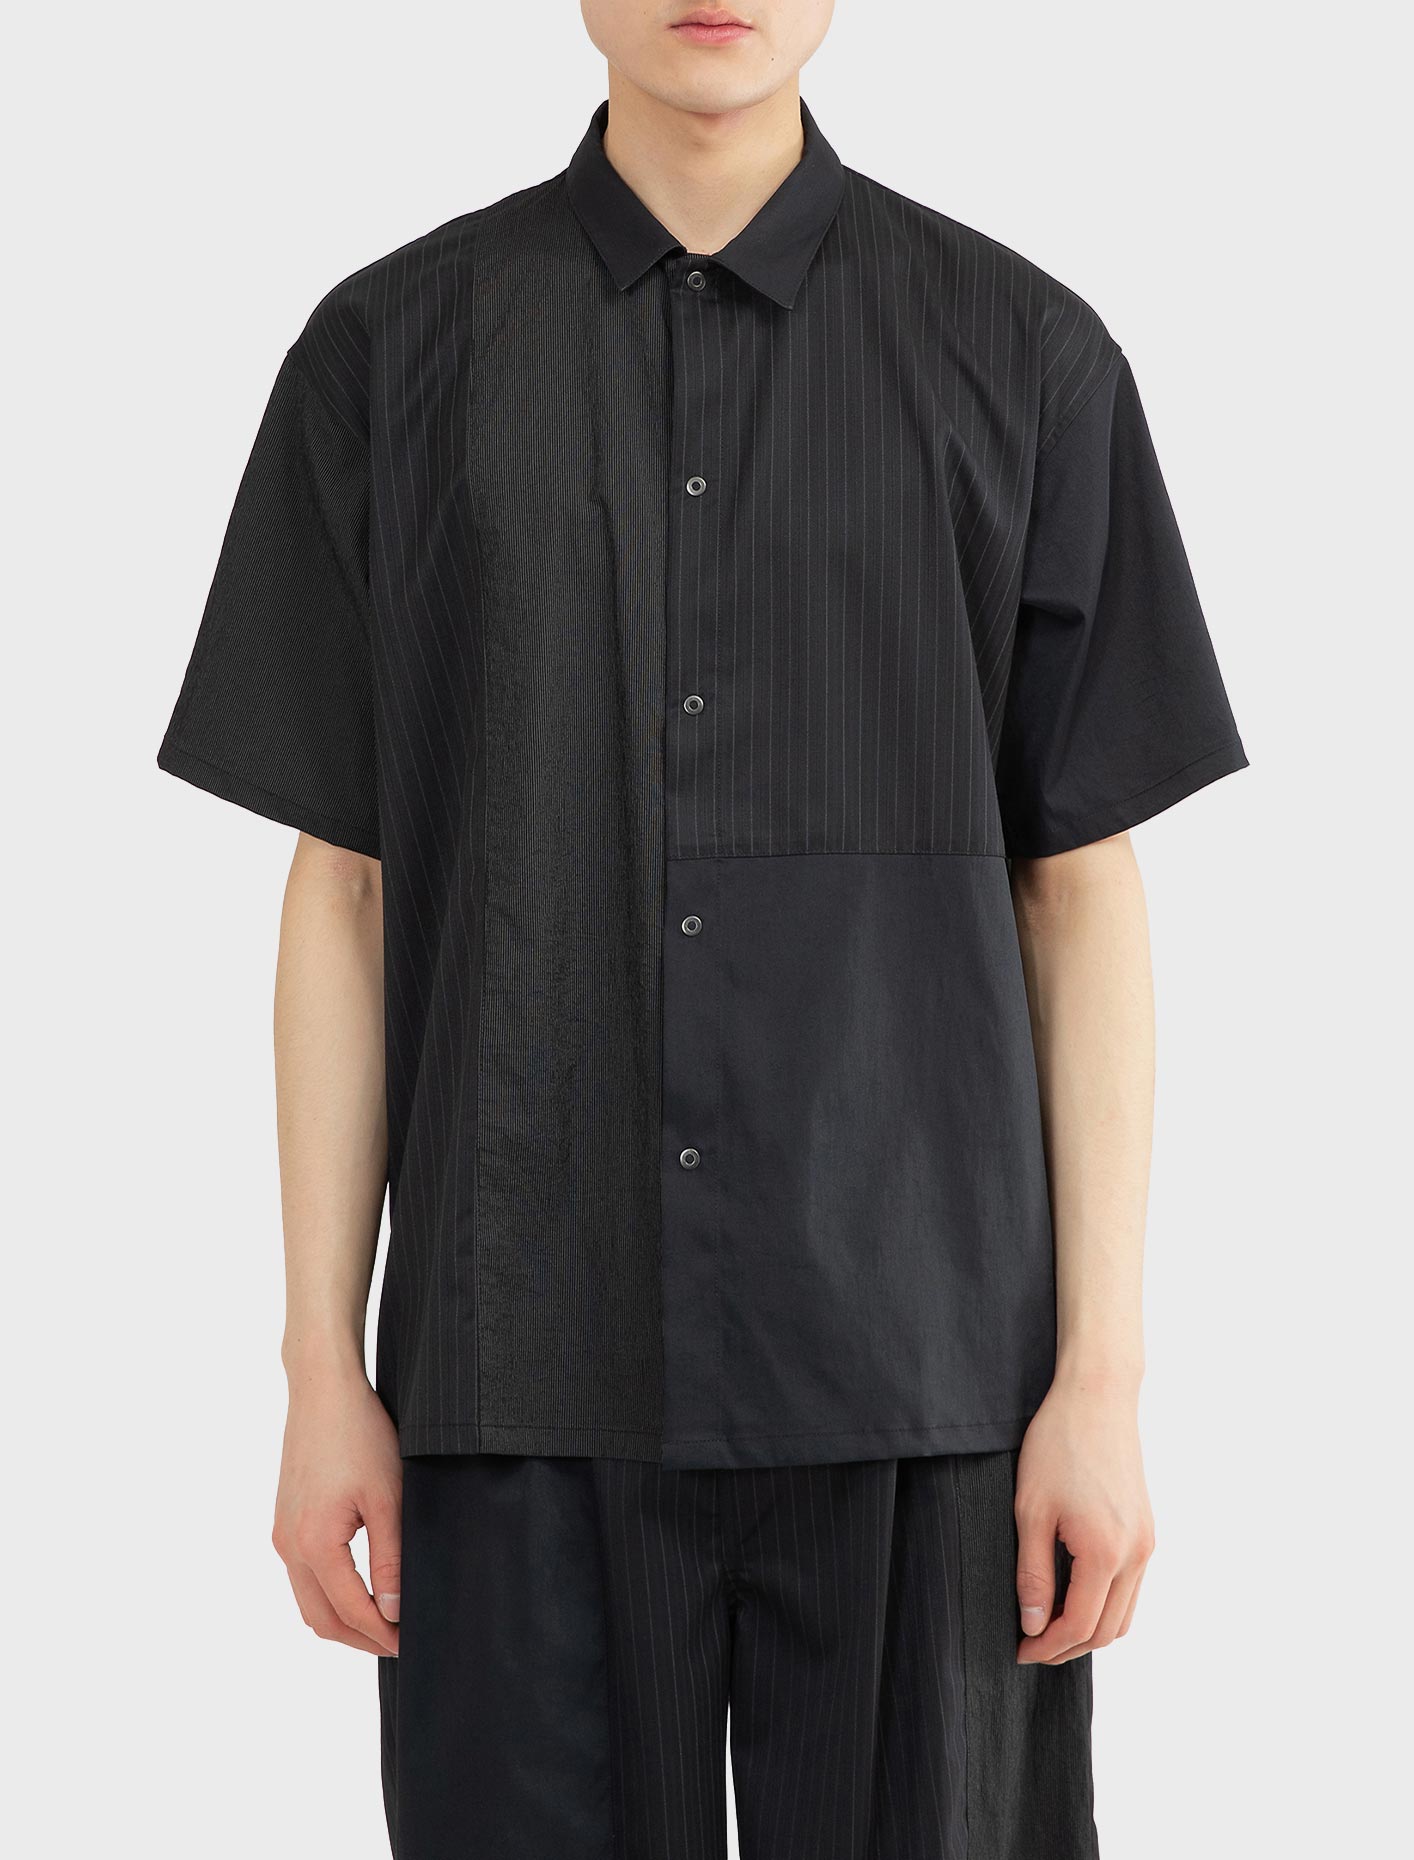 키미 OC 숏 슬리브 셔츠 블랙